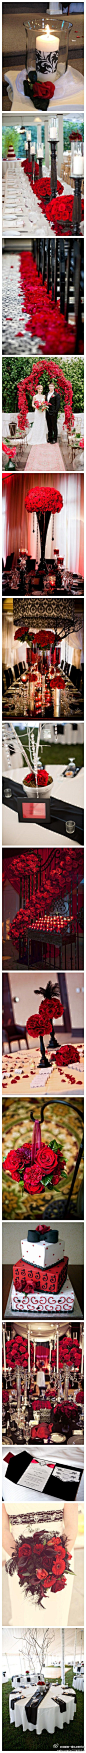 #主题灵感# 哥特式的复古主题婚礼布置灵感秀，这一系列的红黑创意搭配，到处充满了神秘的味道。